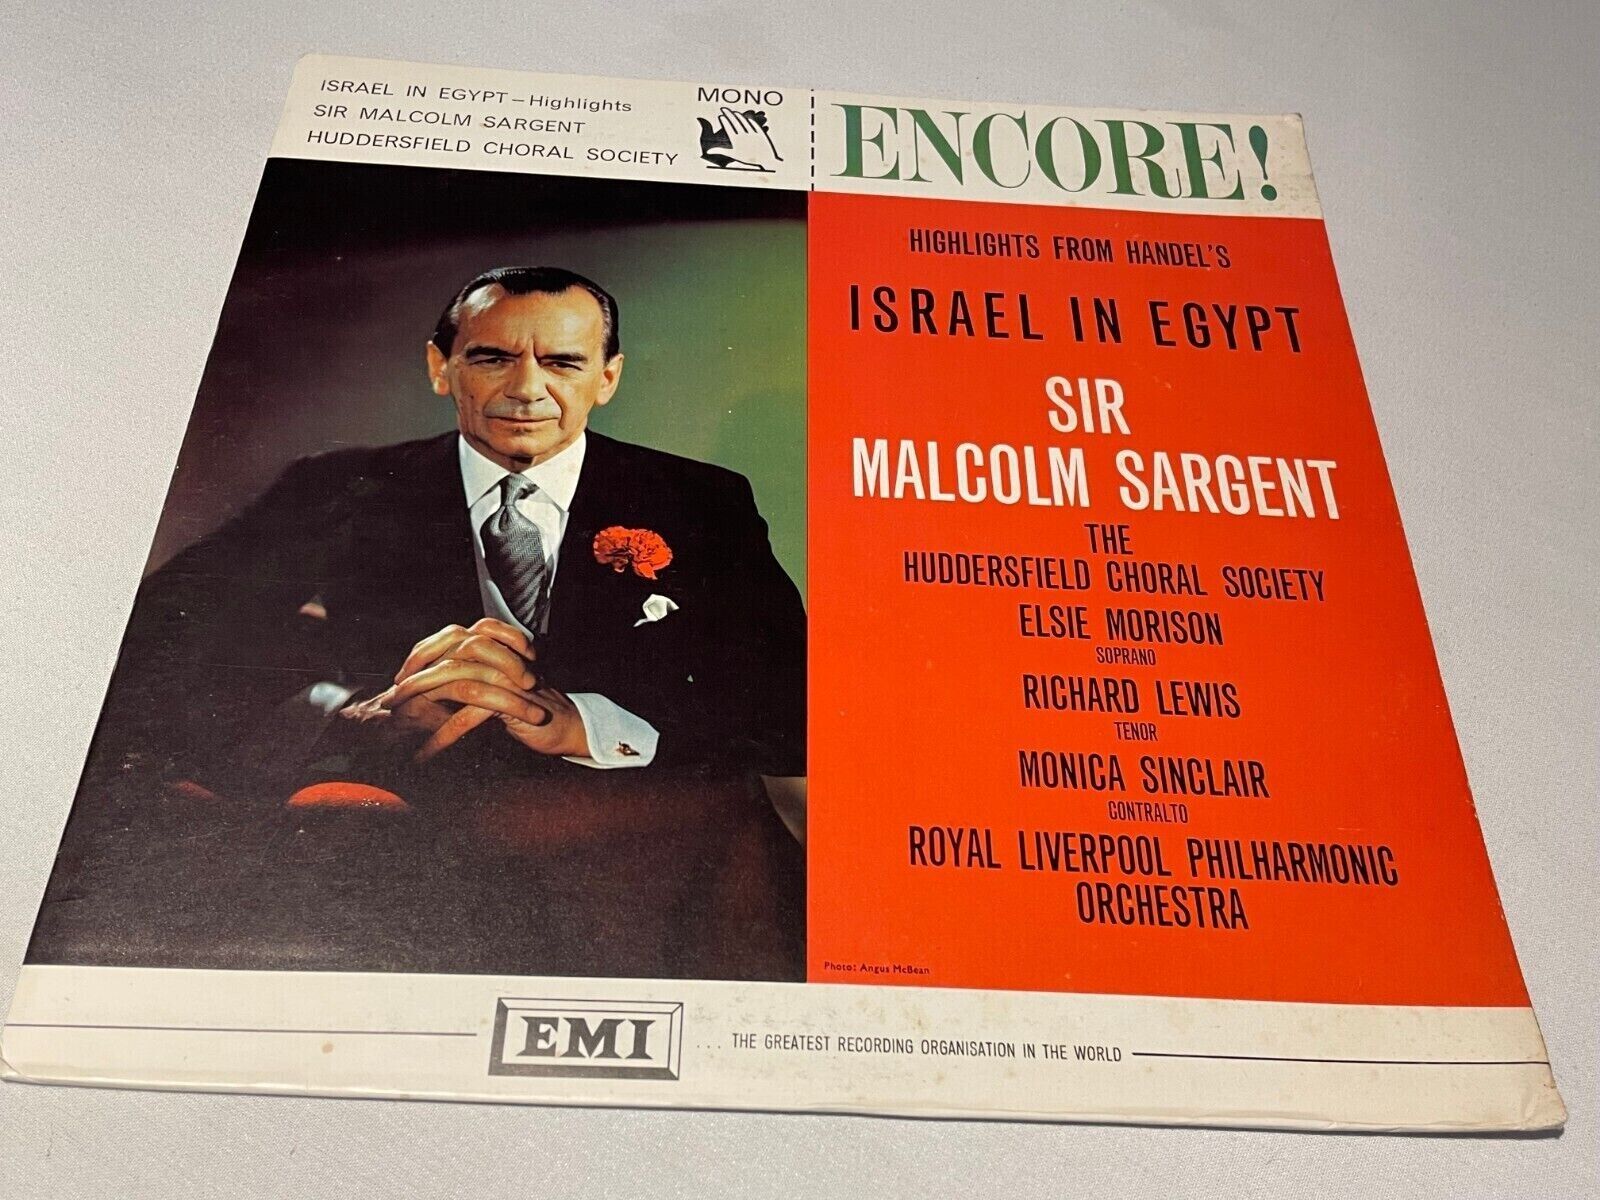 Handel - Israel in Egypt (Highlights) - Sir Malcolm Sargent - EMI ENC 118